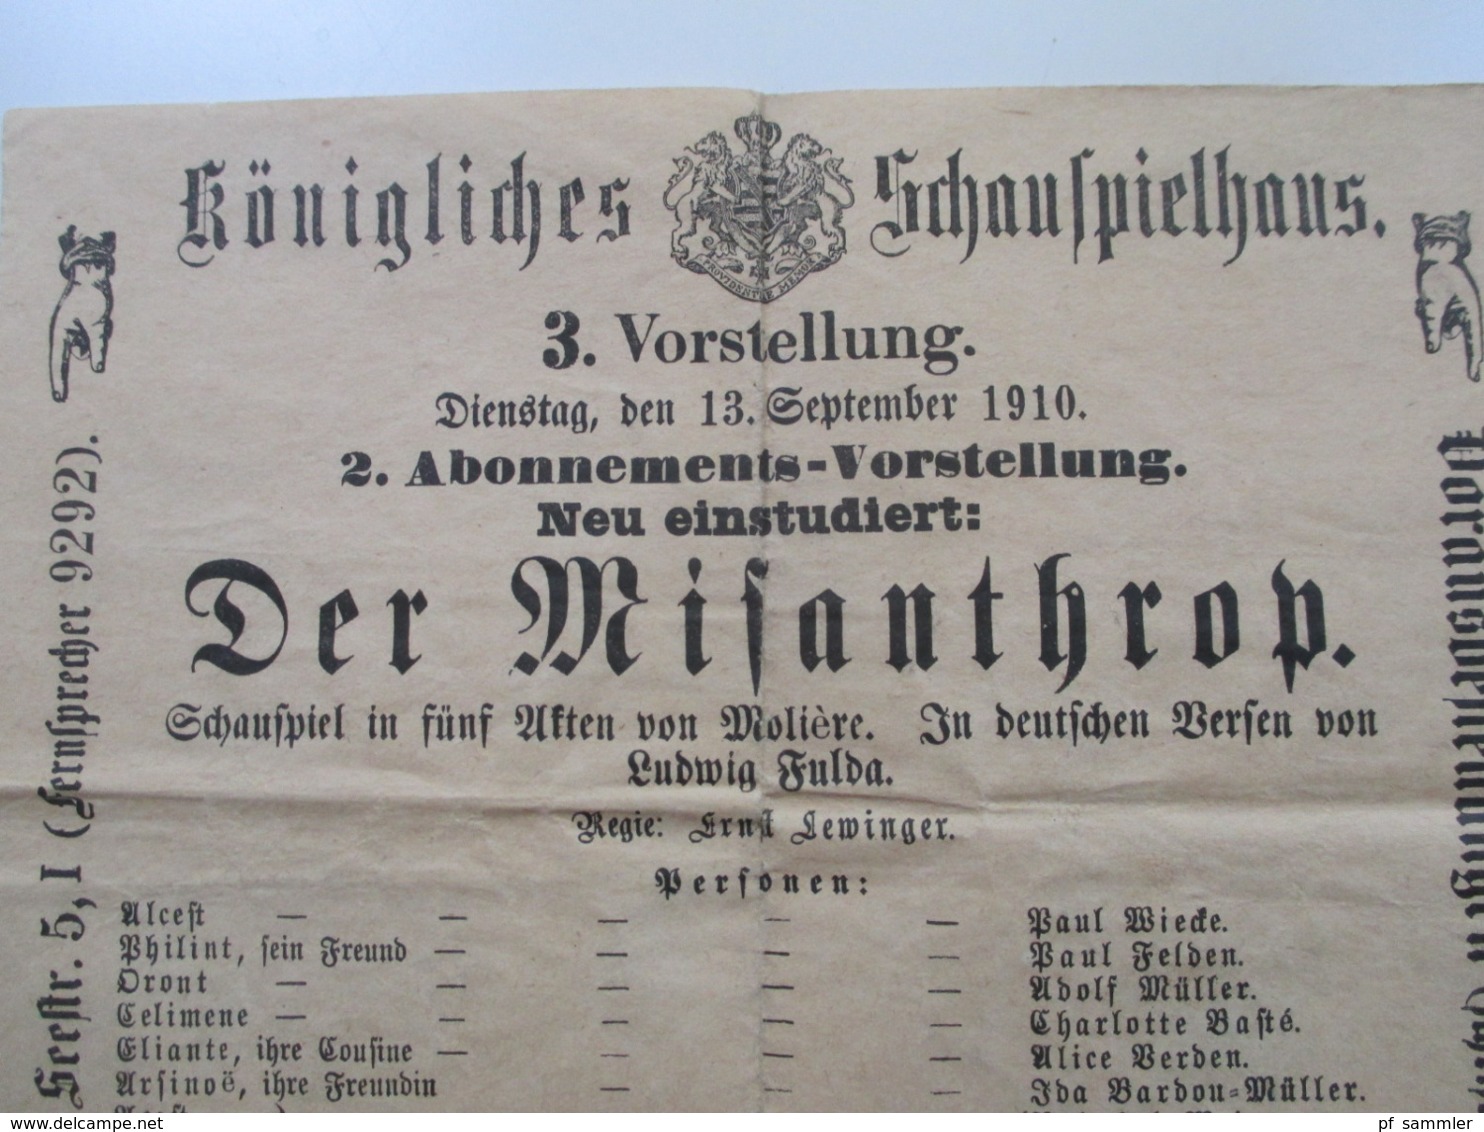 Königliches Schauspielhaus Seestr. 5 Aus Dem Jahre 1910 Programme / Werbeplakate Die Rabensteinerin / Der Misanthrop - Programmi